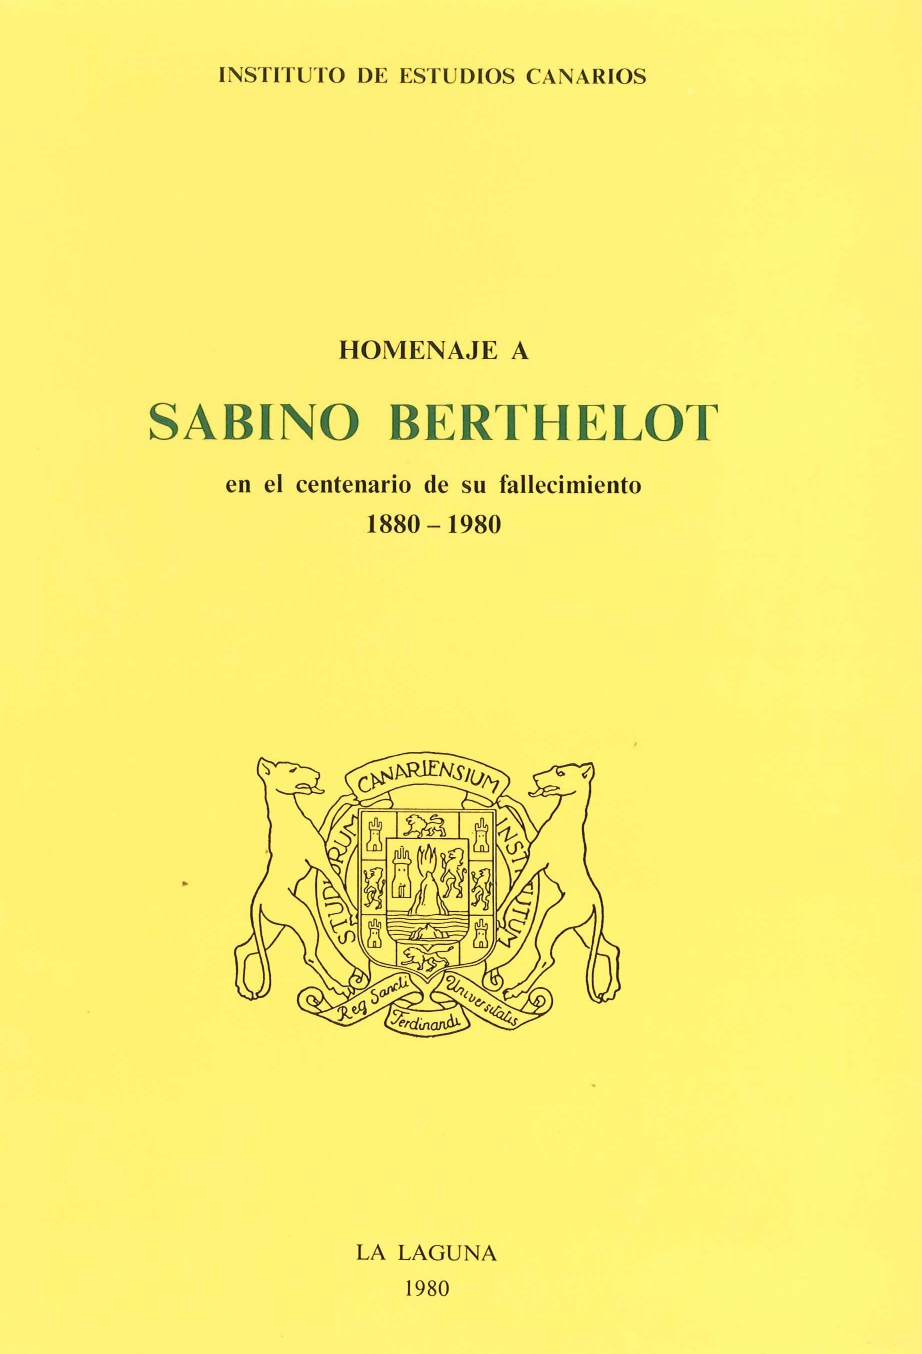 Imagen de portada del libro Homenaje a Sabino Berthelot en el centenario de su fallecimiento